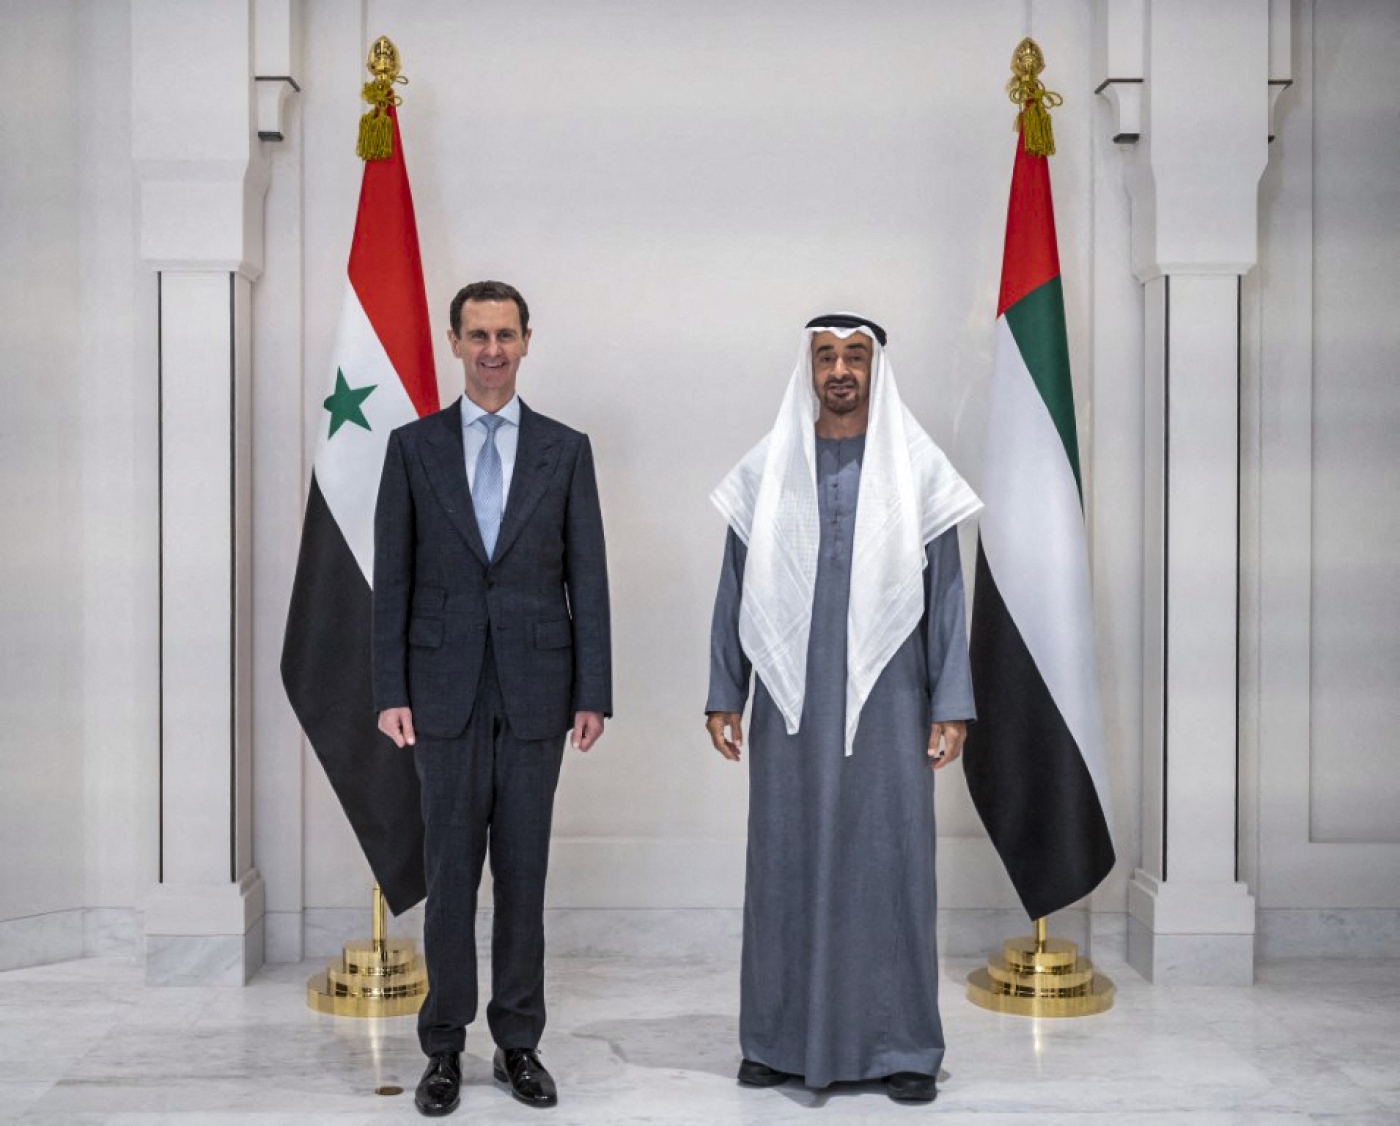 Le président syrien, Bachar al-Assad est accueilli, à Abou Dabi, par le prince héritier Mohammed ben Zayed, le 18 mars 2021 (WAM/AFP)